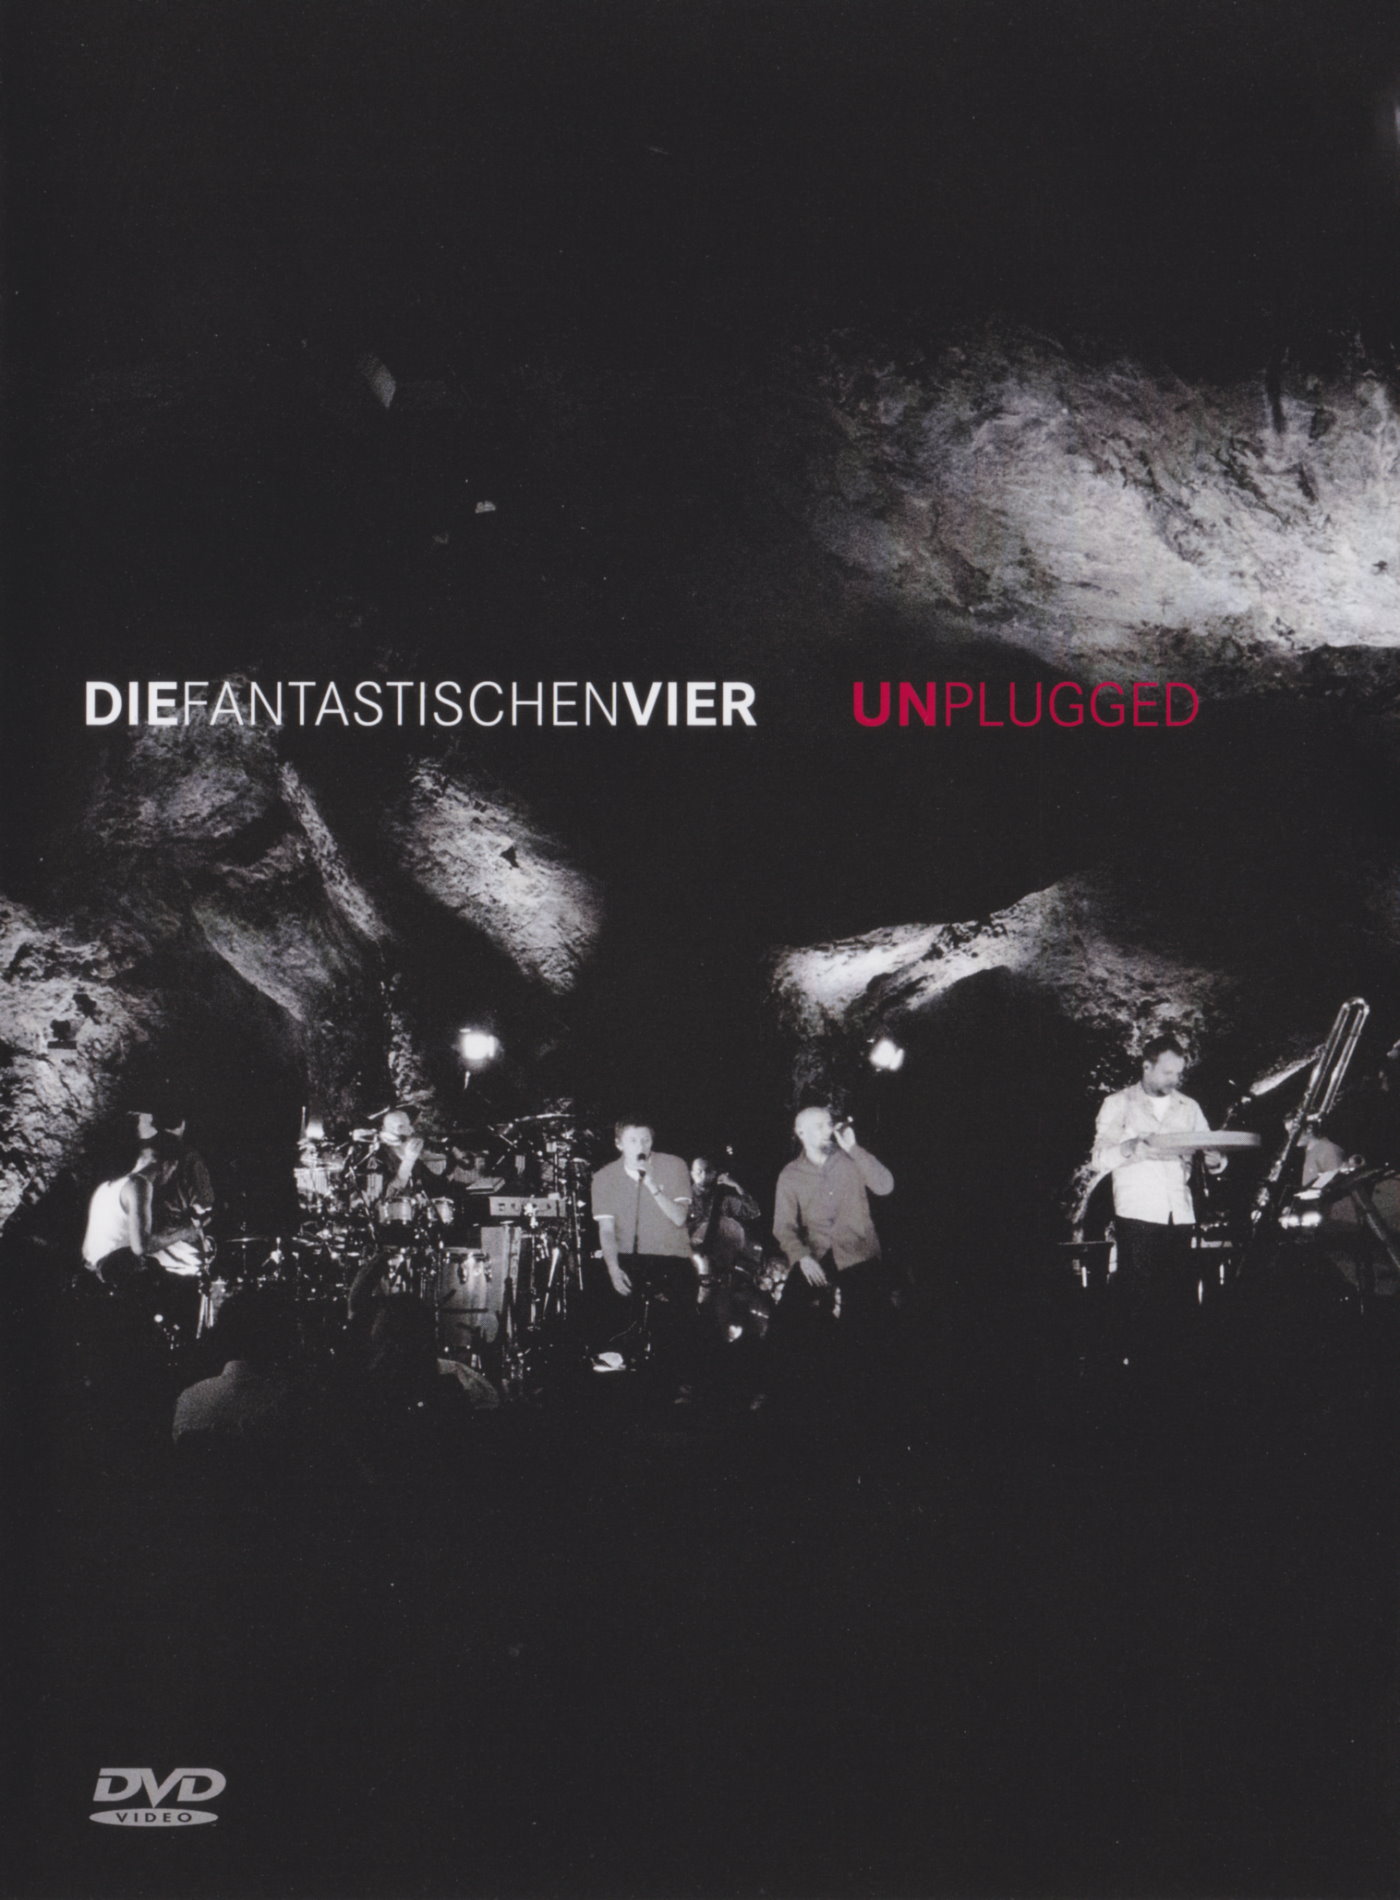 Cover - Die Fantastischen Vier - Unplugged.jpg